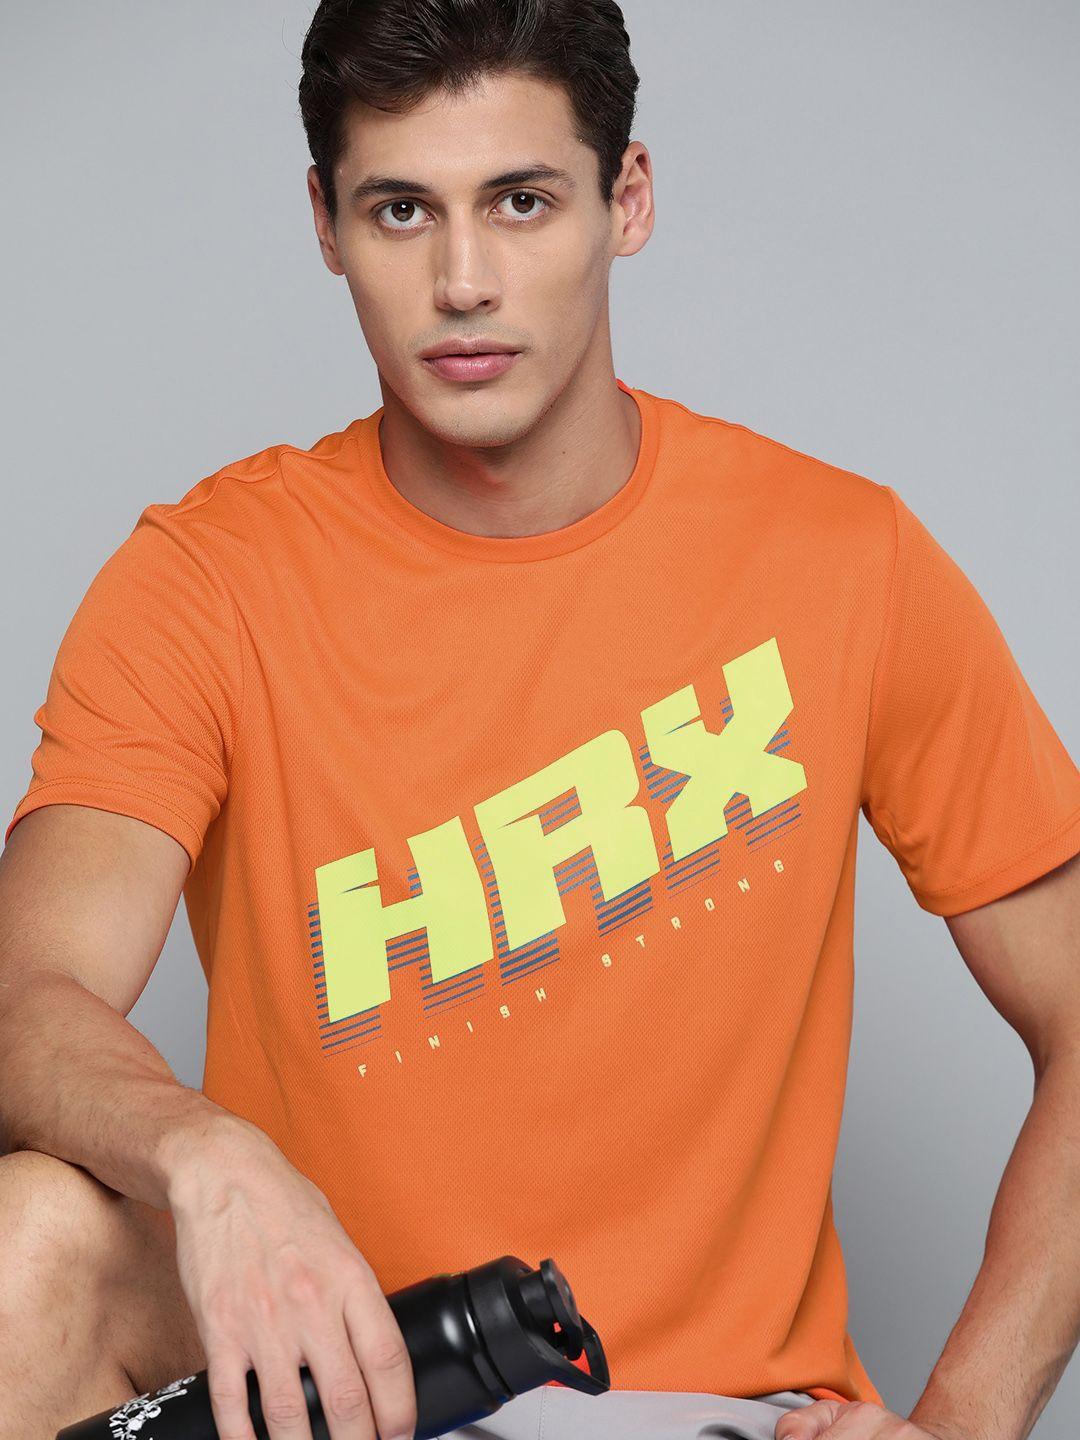 hrx by hrithik roshan running men neon orange rapid-dry brand carrier t-shirt